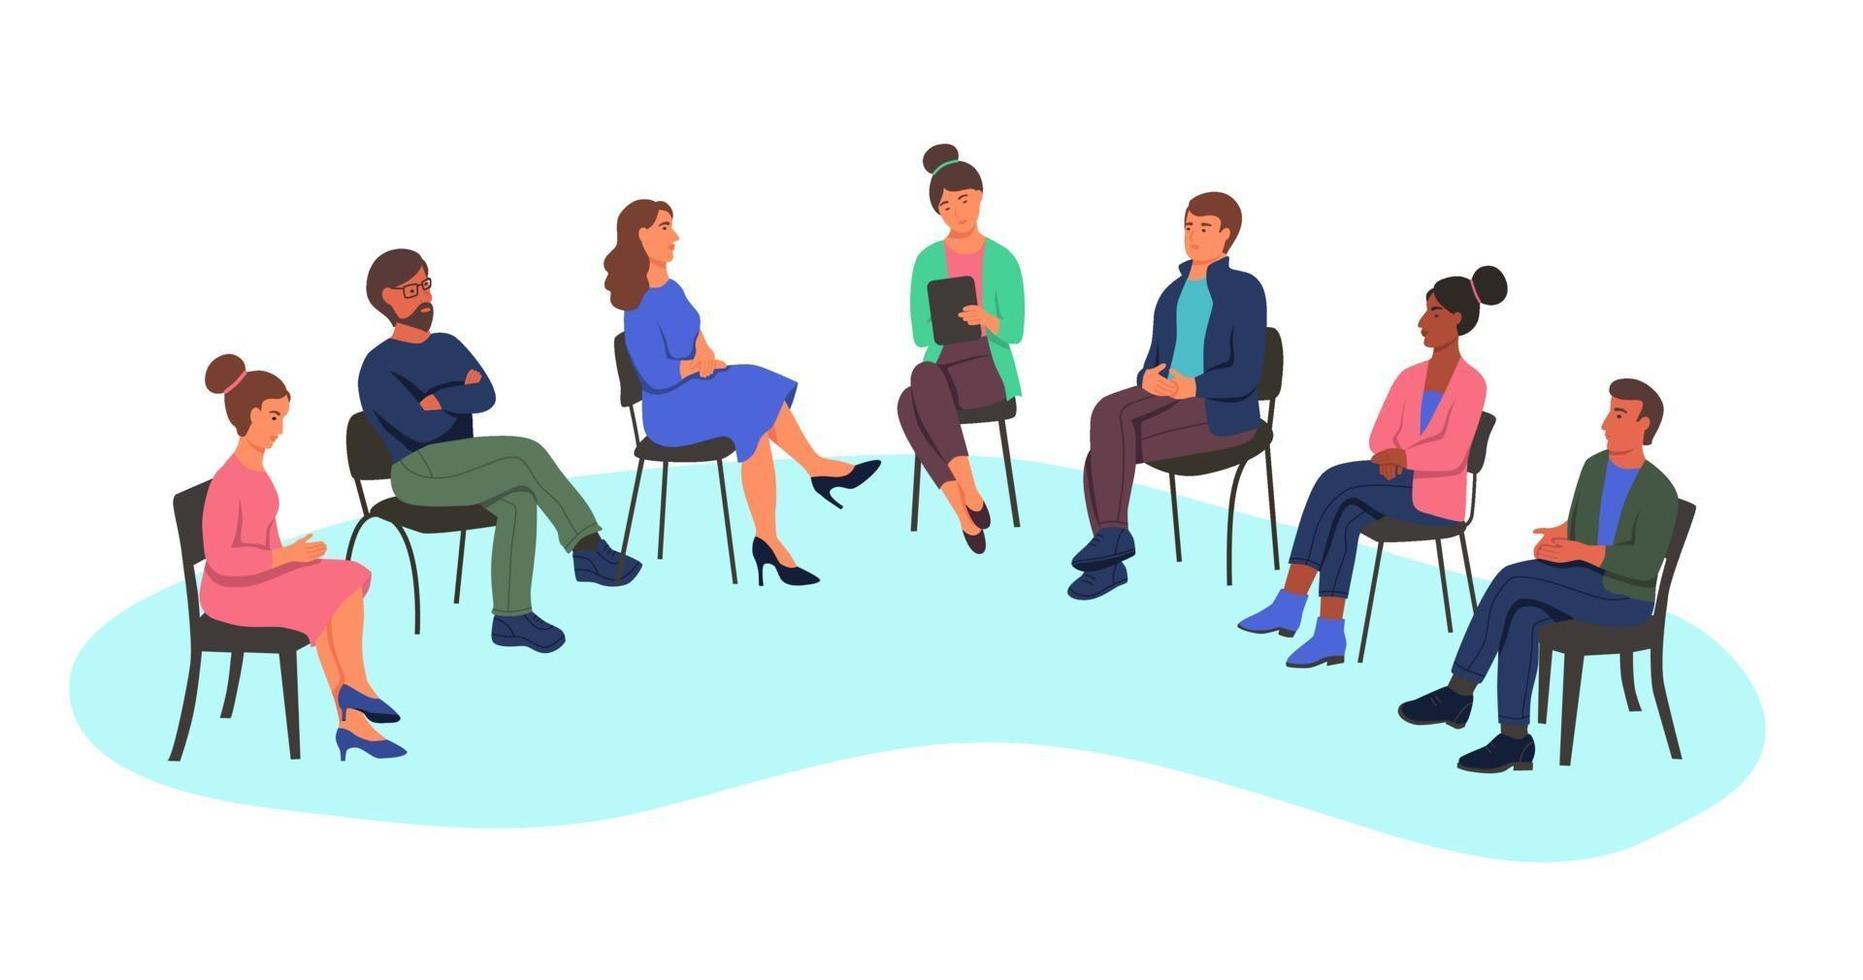 homens e mulheres em uma consulta de psicólogo, o conceito de terapia de grupo, o trabalho em grupo, uma pesquisa. as pessoas se sentam em cadeiras em um semicírculo. ilustração em vetor plana dos desenhos animados.